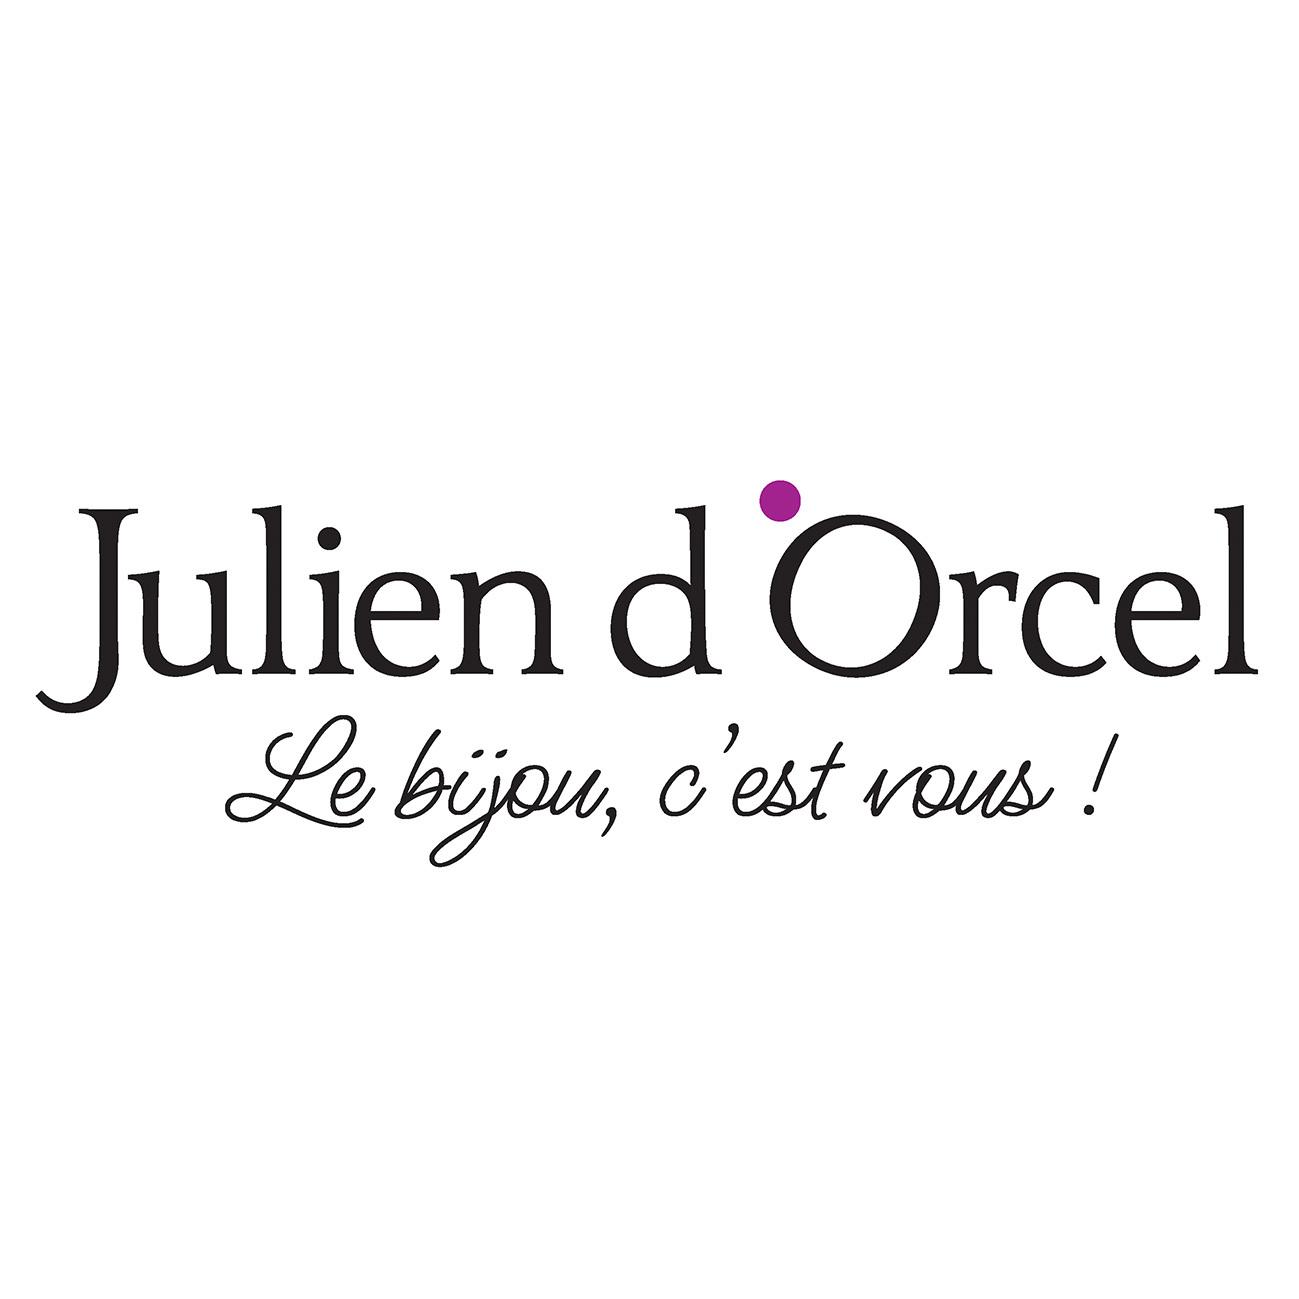 Julien D'orcel Chalon Sur Saone Sud Chalon Sur Saône